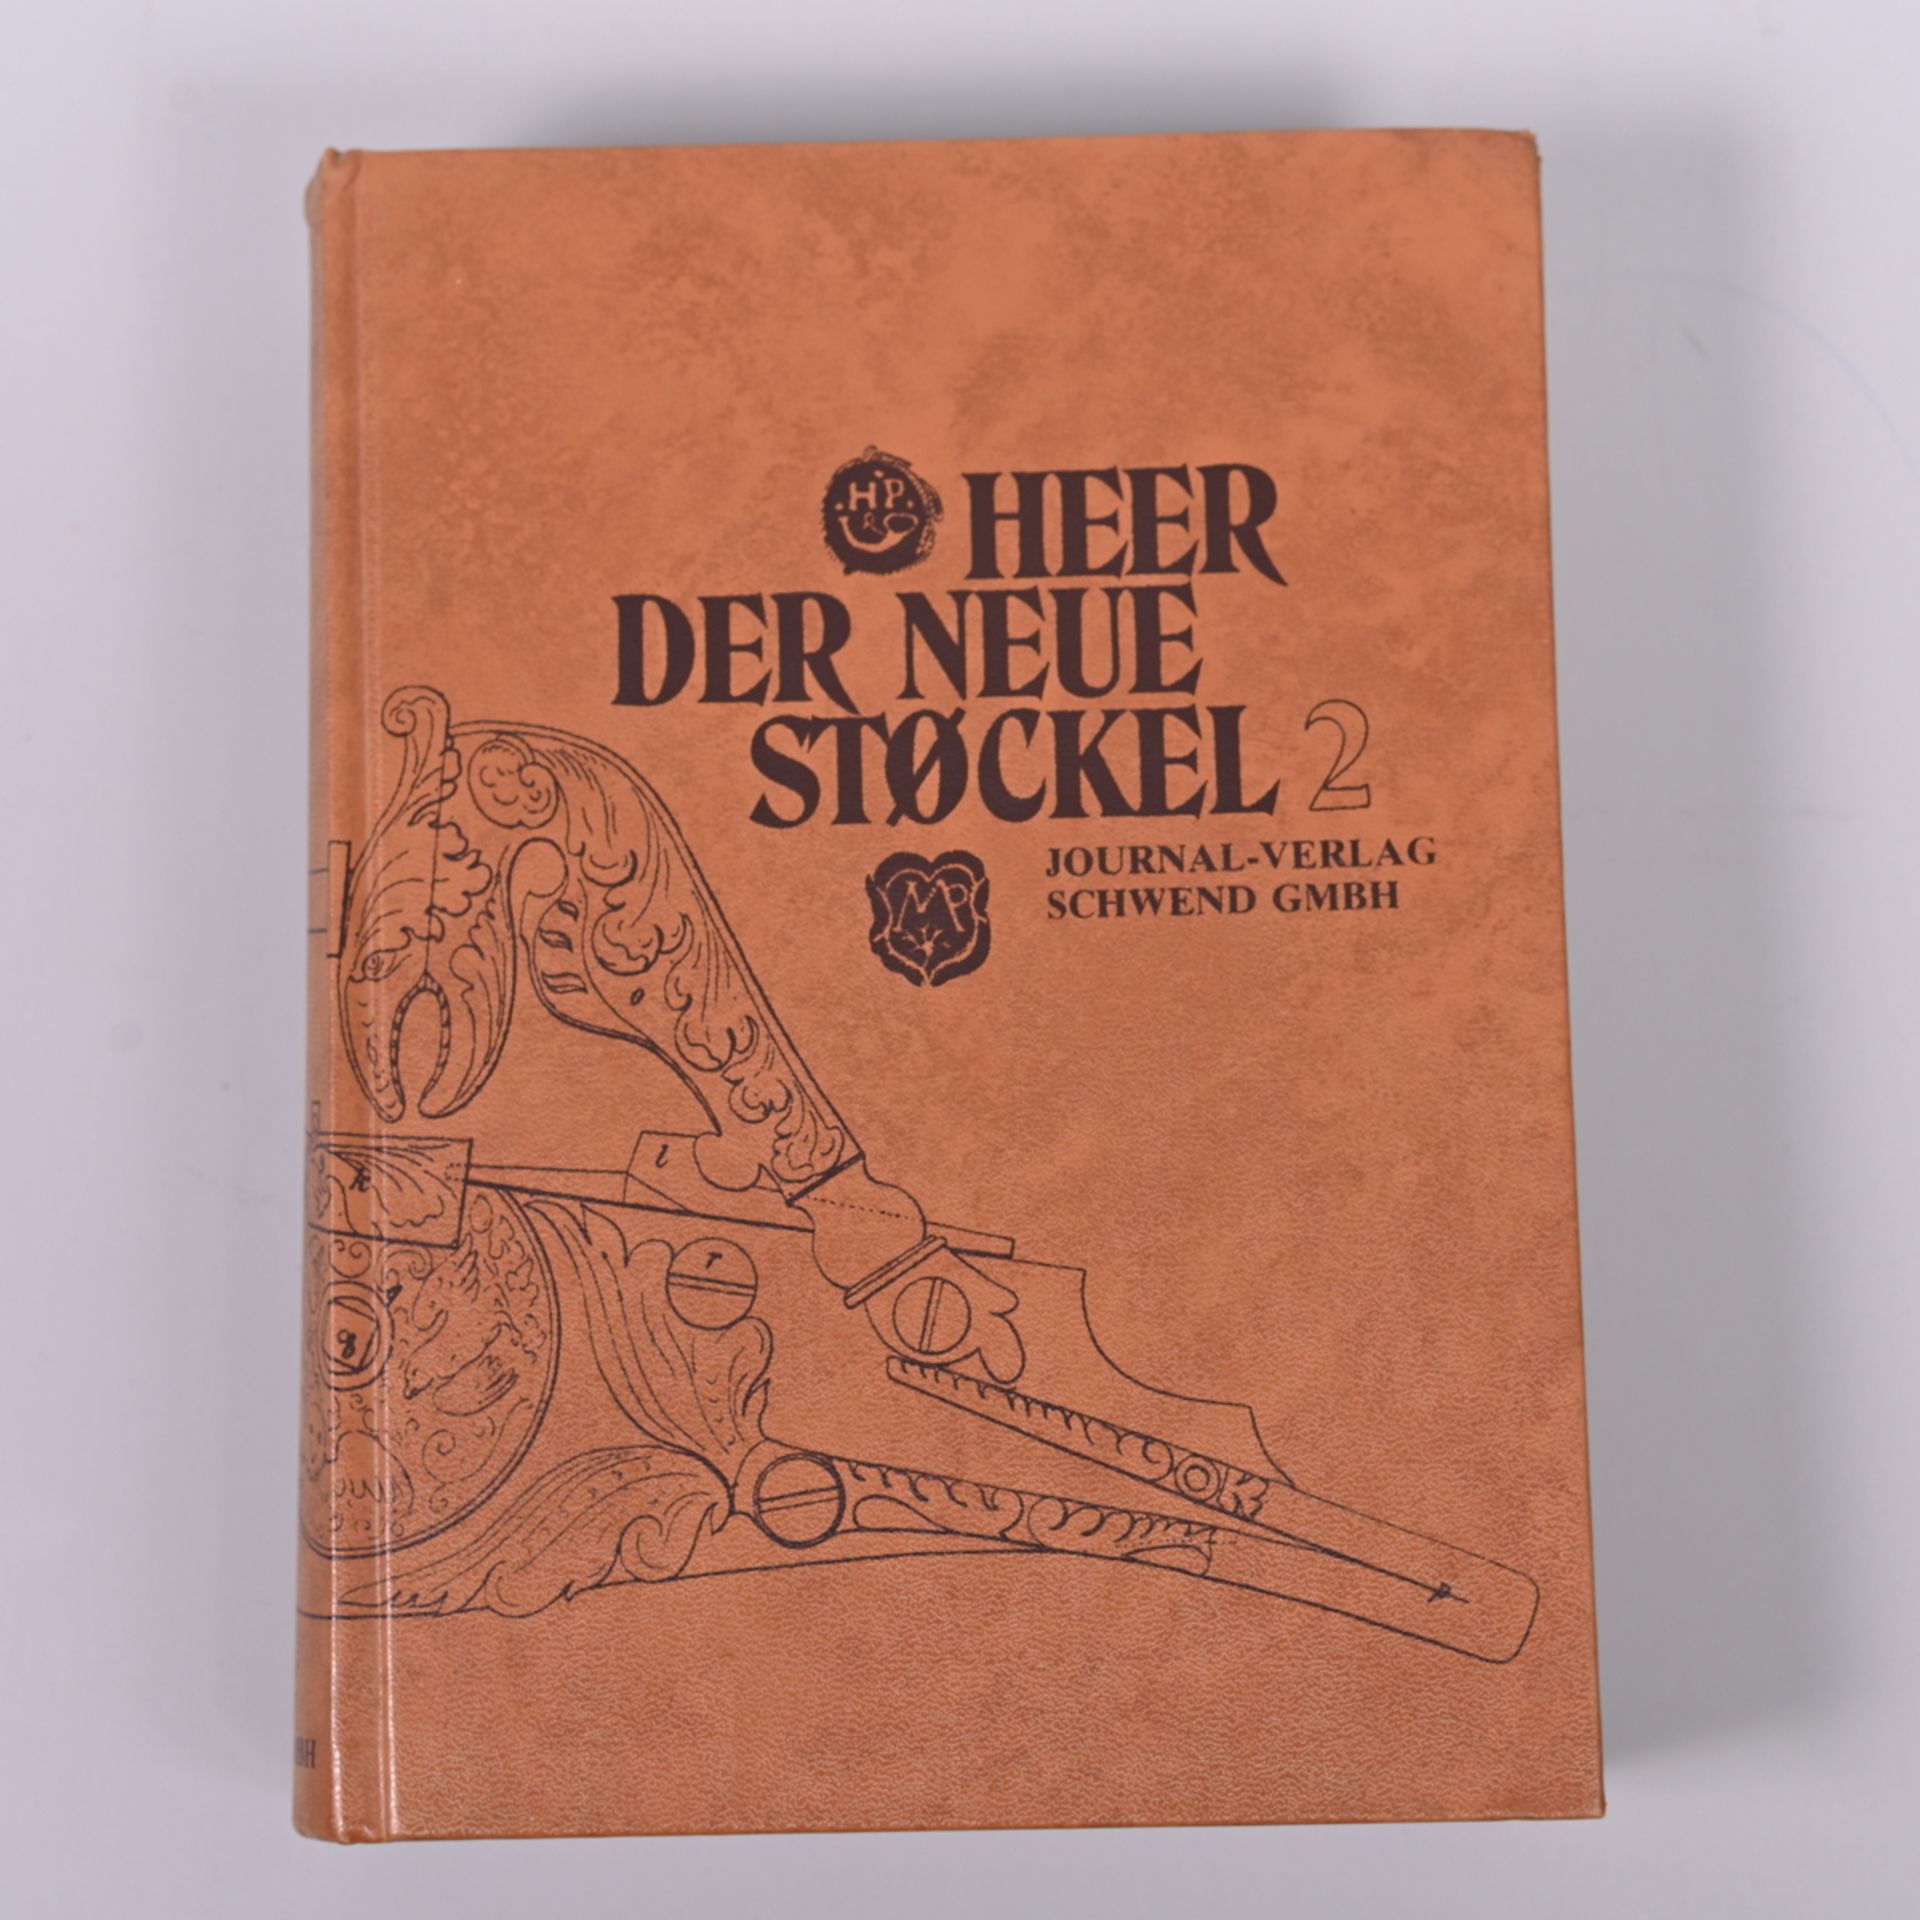 " Der neue Stöckel ", 2.Band, Eugené Heer, Journal-Verlag Schwend GmbH, Schwäbisch Hall, 1979,